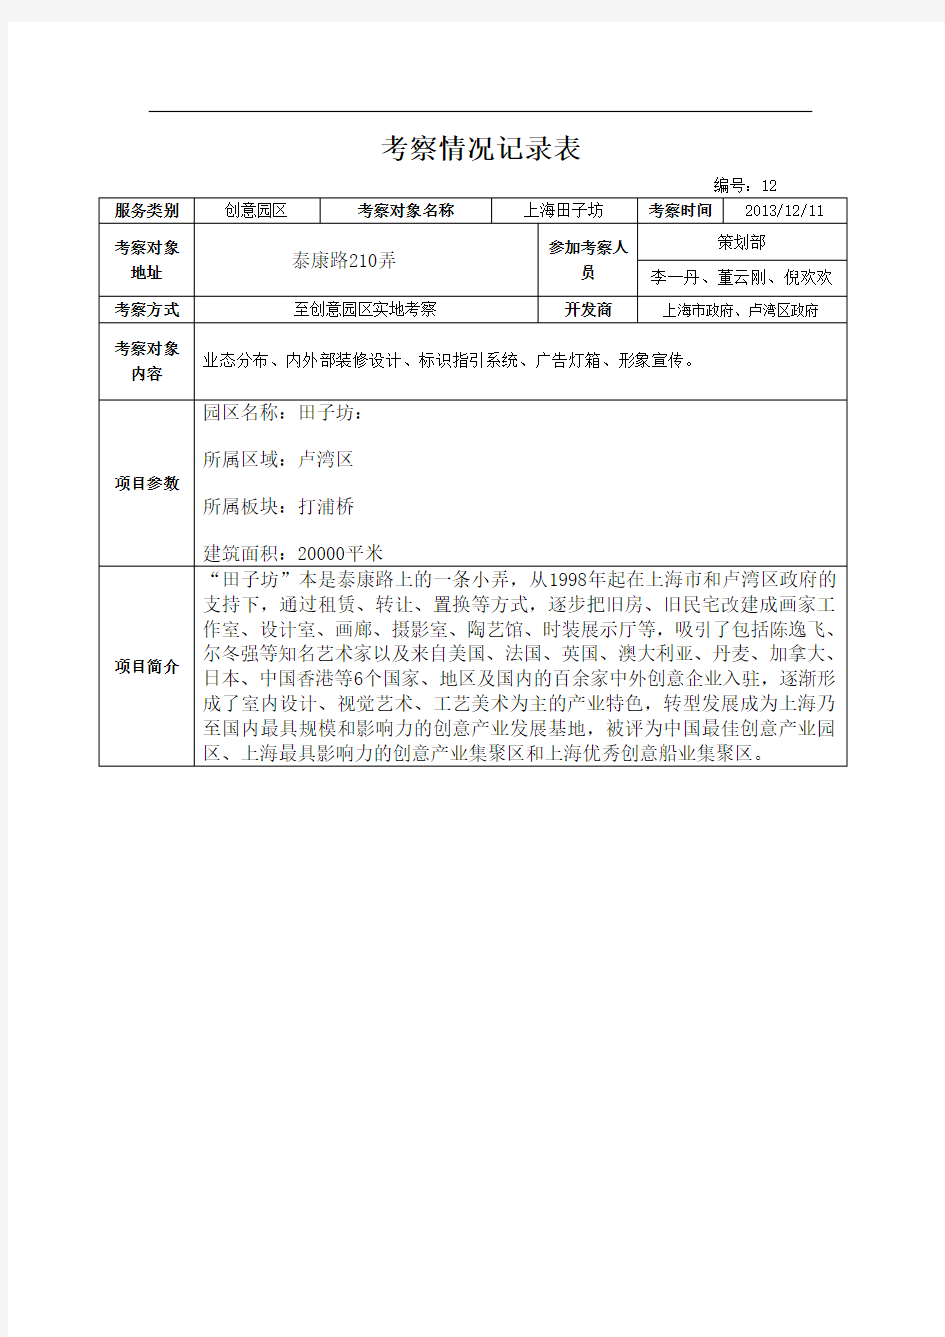 上海田子坊考察报告20131211